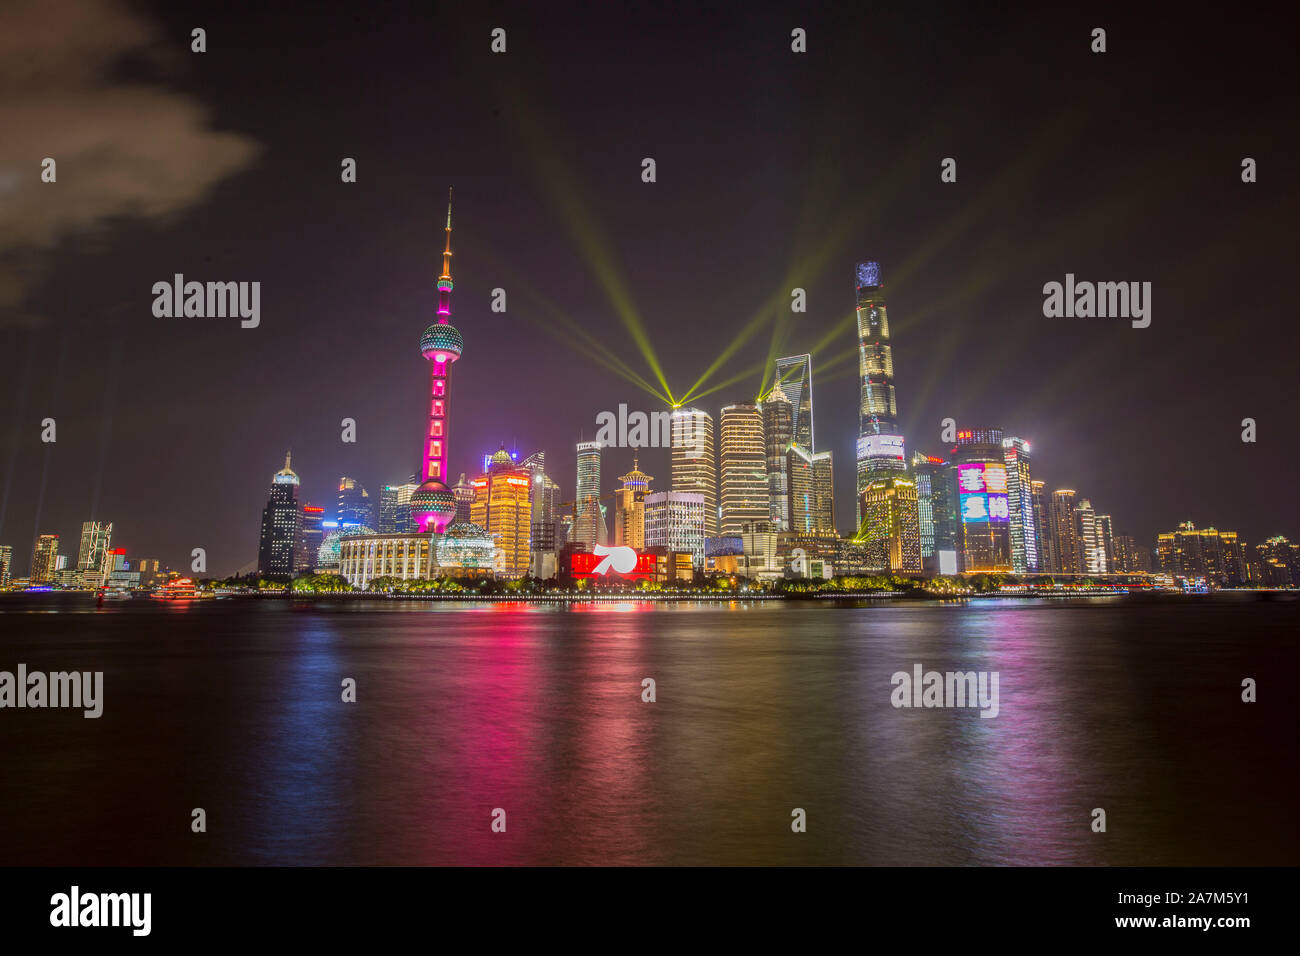 Vue de nuit sur la rivière Huangpu et le quartier financier de Lujiazui avec gratte-ciels et des immeubles de grande hauteur à Pudong, Shanghai, Chine, Banque D'Images